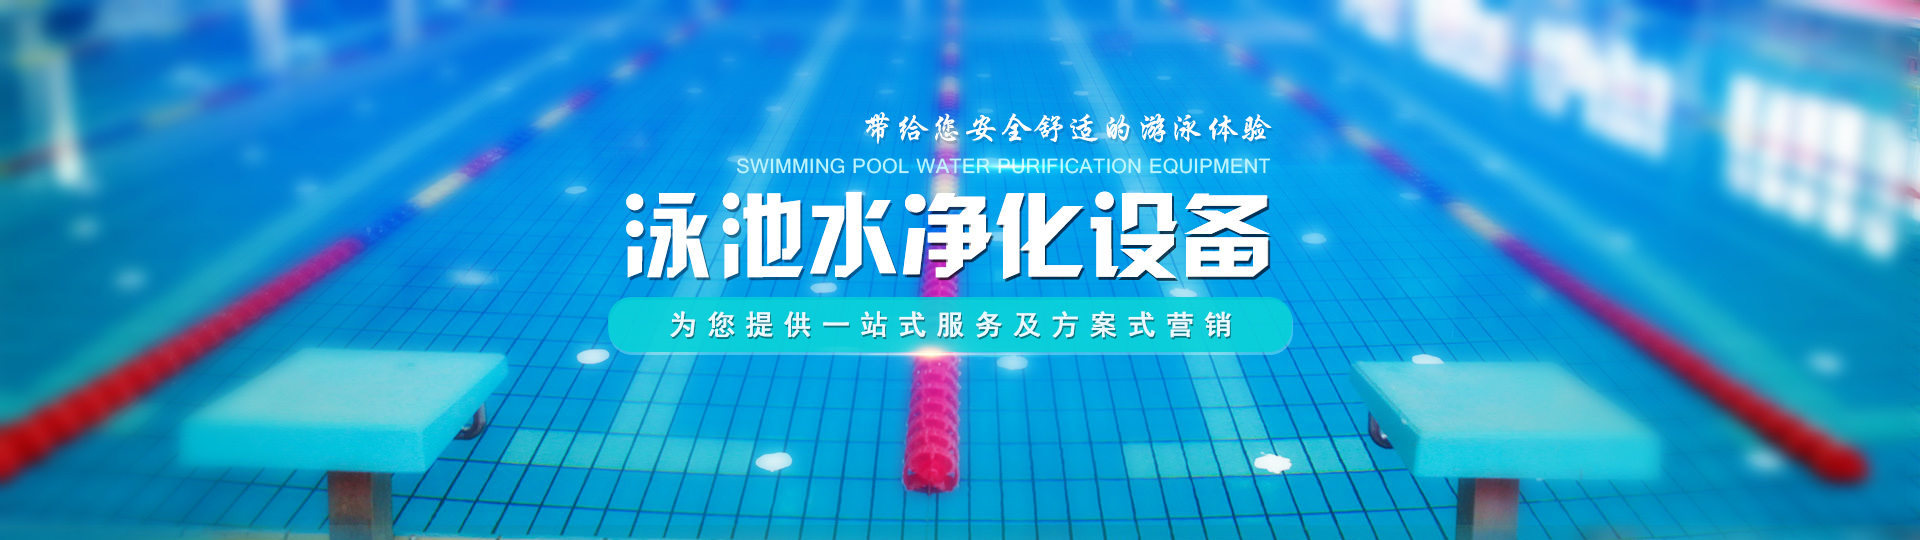 广州市群泰桑拿泳池设备有限公司